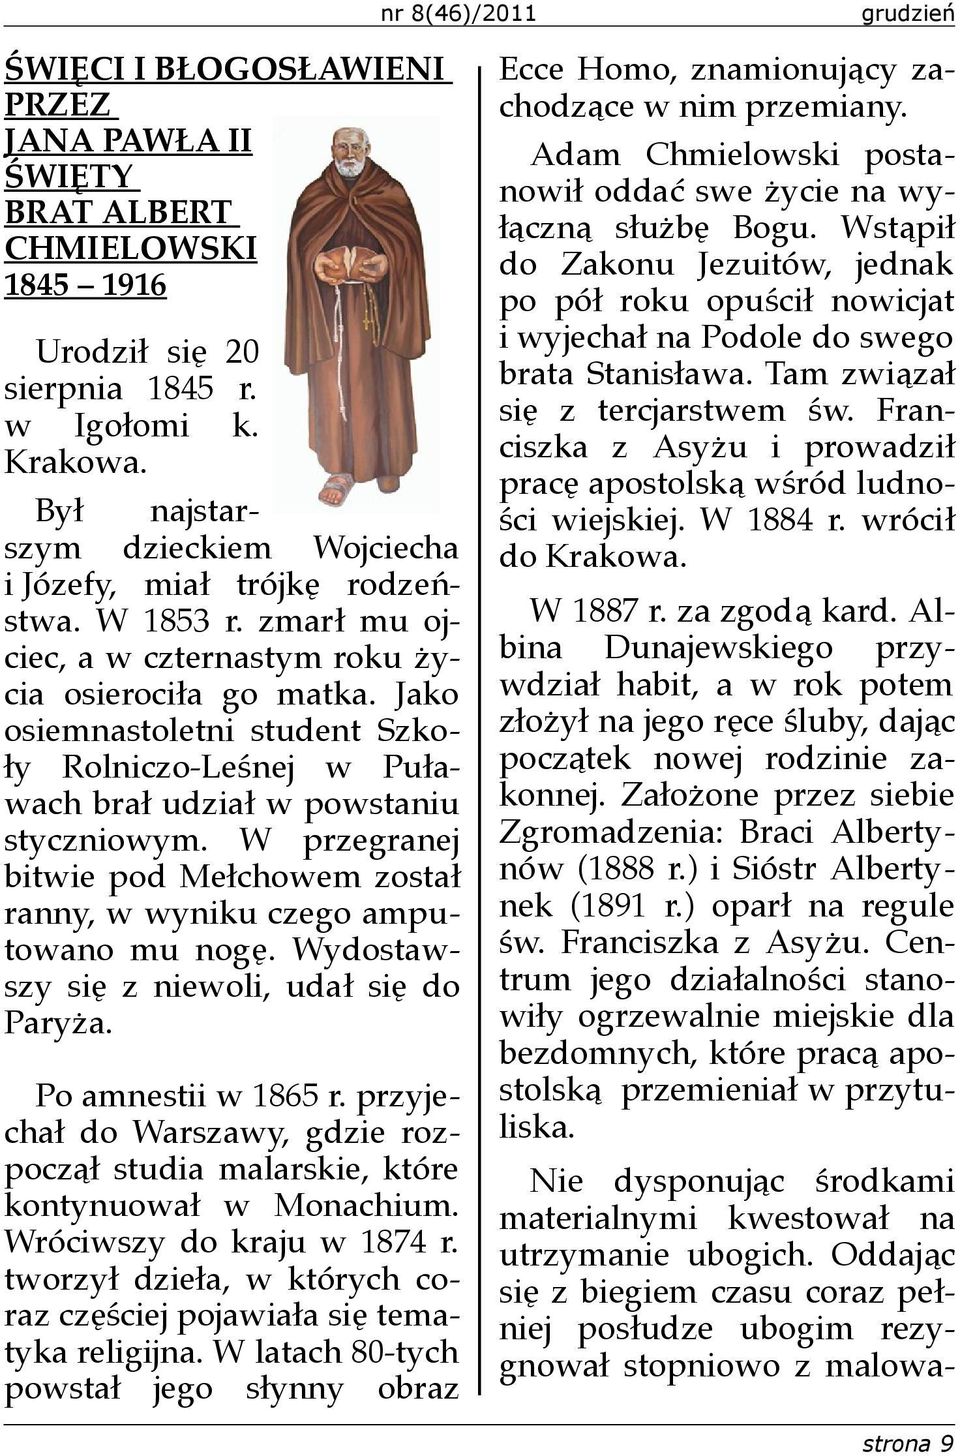 Jako osiemnastoletni student Szkoły Rolniczo-Leśnej w Puławach brał udział w powstaniu styczniowym. W przegranej bitwie pod Mełchowem został ranny, w wyniku czego amputowano mu nogę.